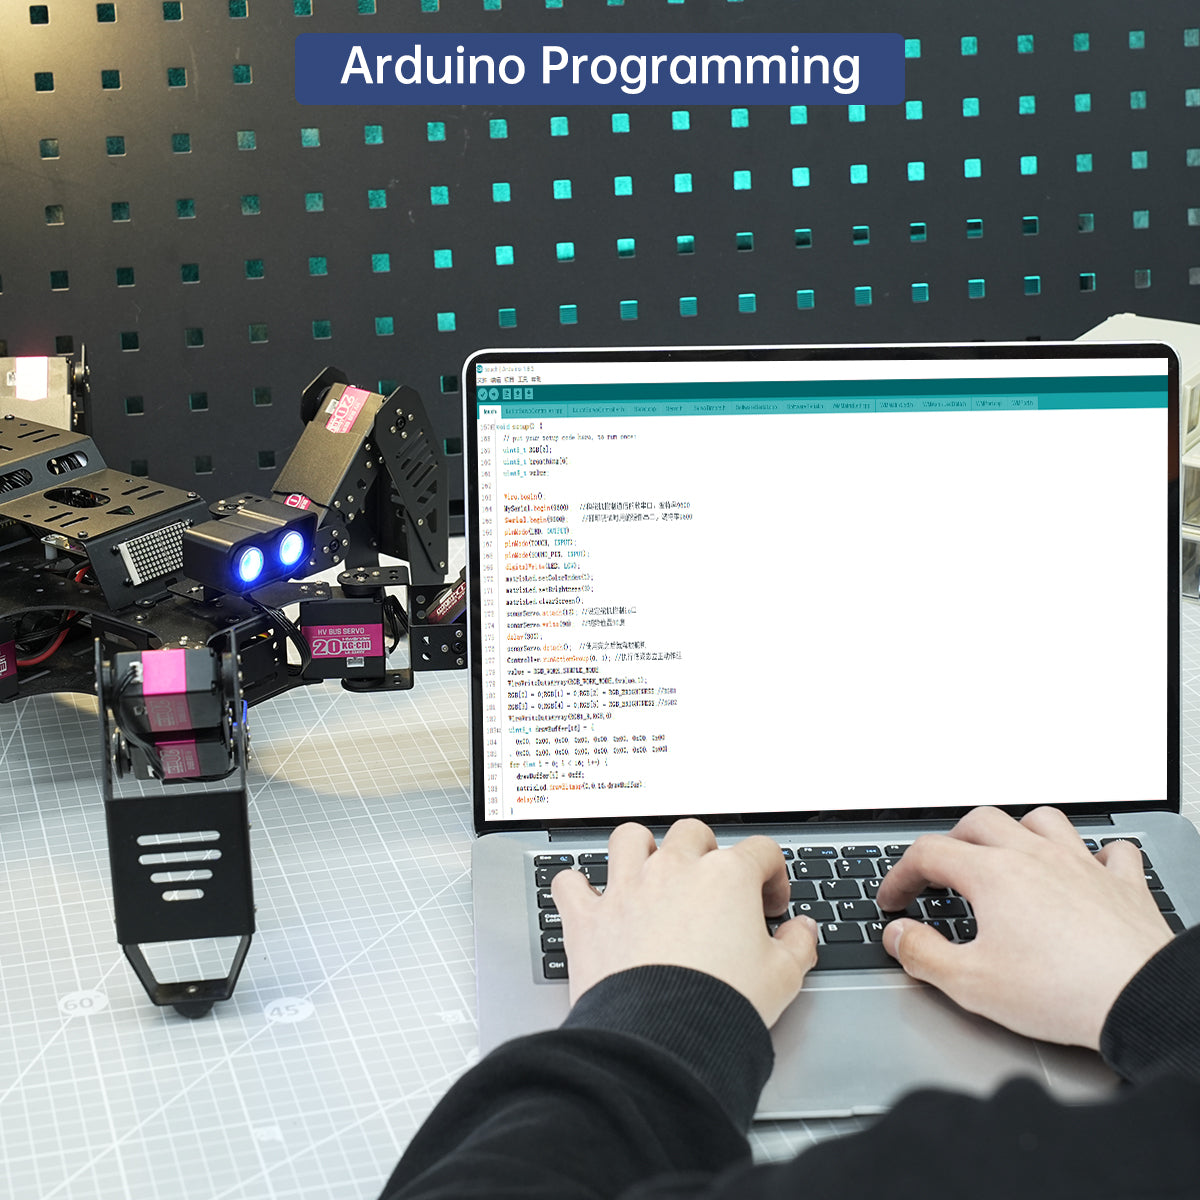 Spiderbot: Hiwonder Hexapod Programming Robot for Arduino Standard Version